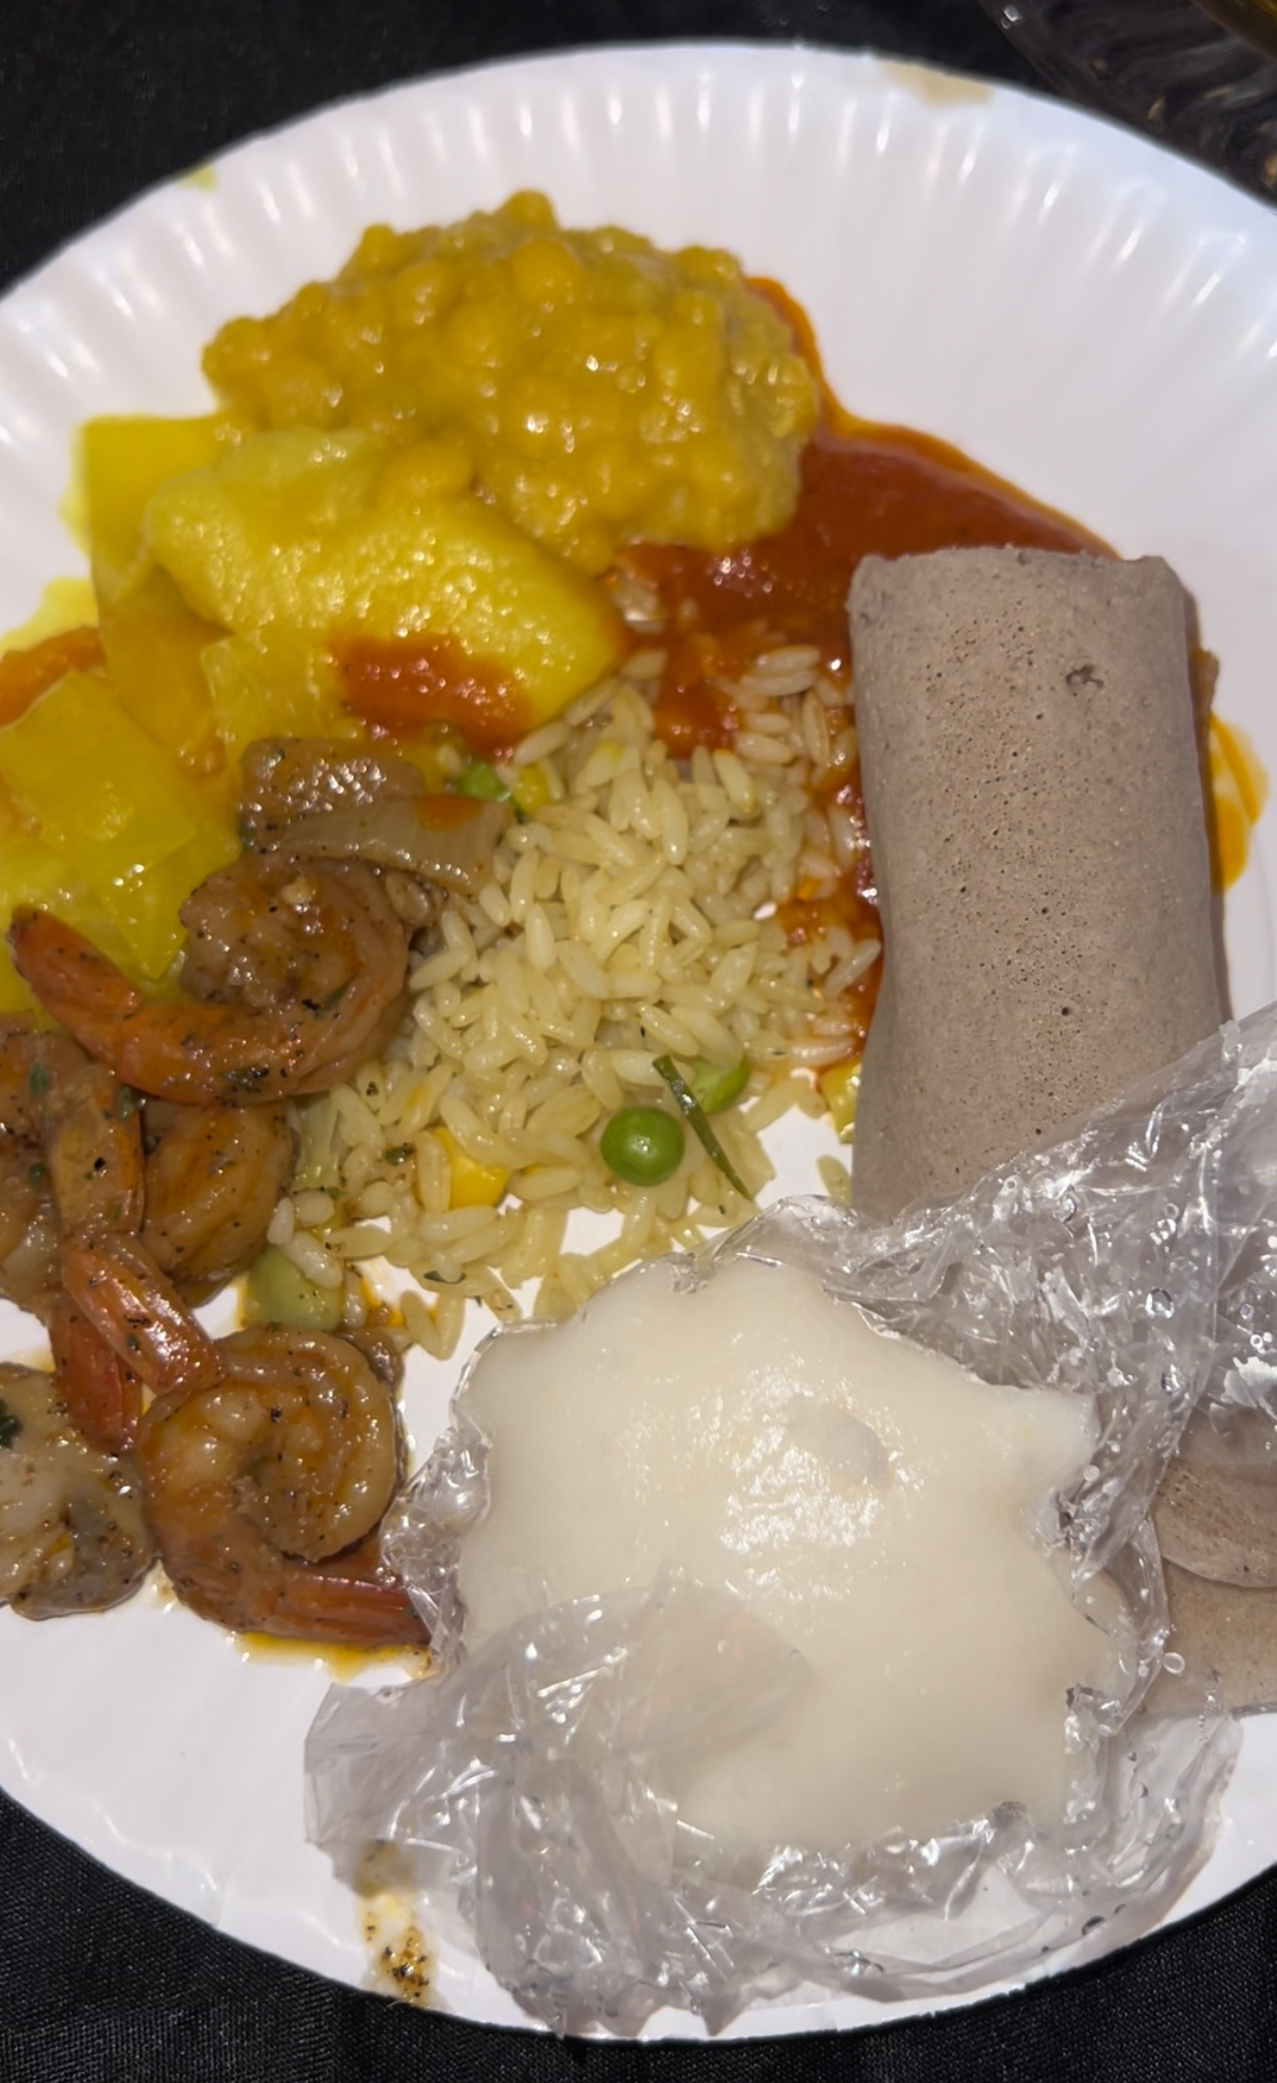 An ASU African Night meal.